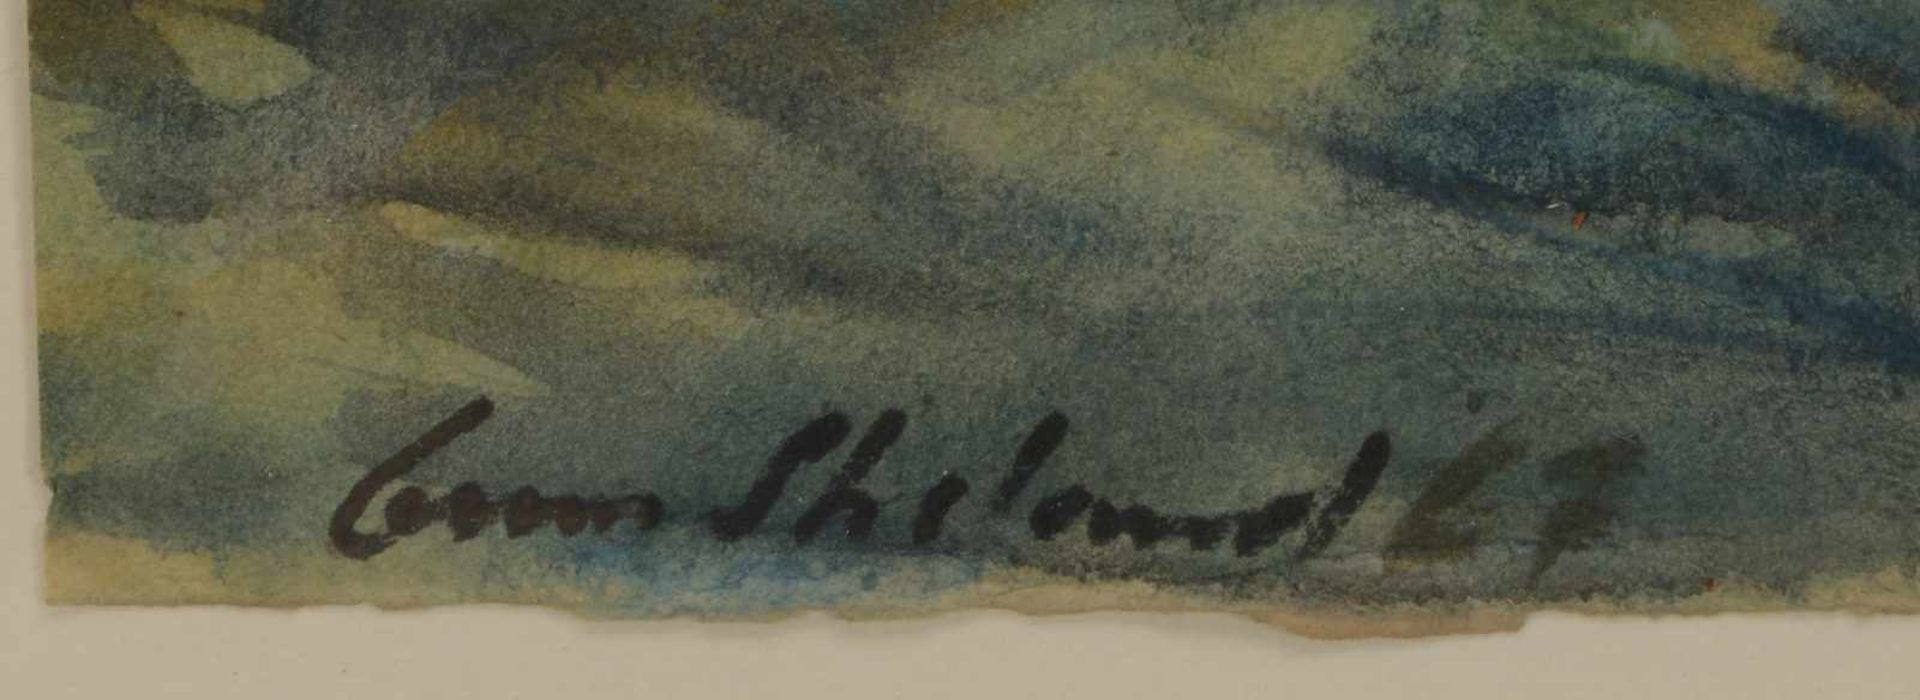 Streland, Gun, 'Landschaft', Aquarell auf Papier, unten links signiert und datiert, unter - Bild 2 aus 2